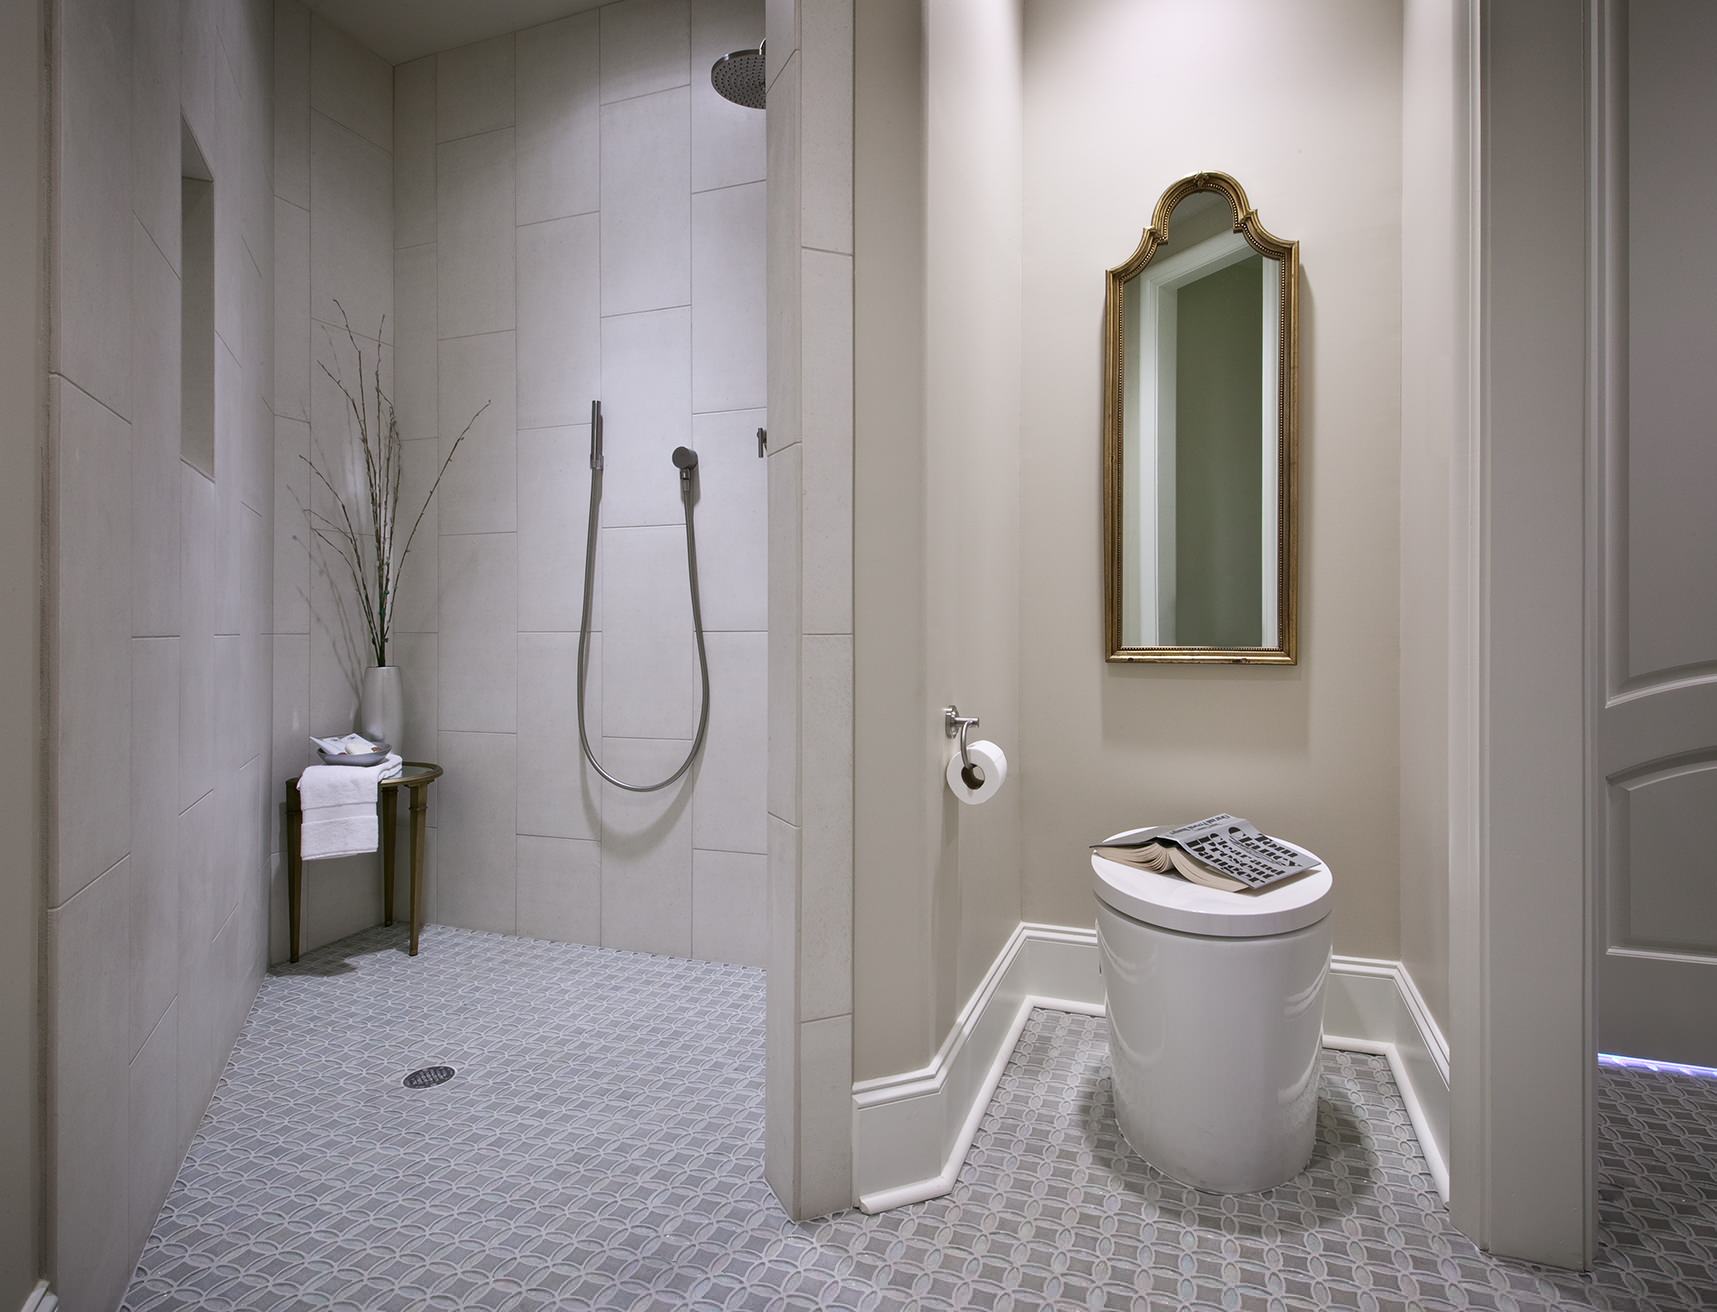 Accessible Guest Bath Contemporary, Handicap Accessible Bathrooms Designs